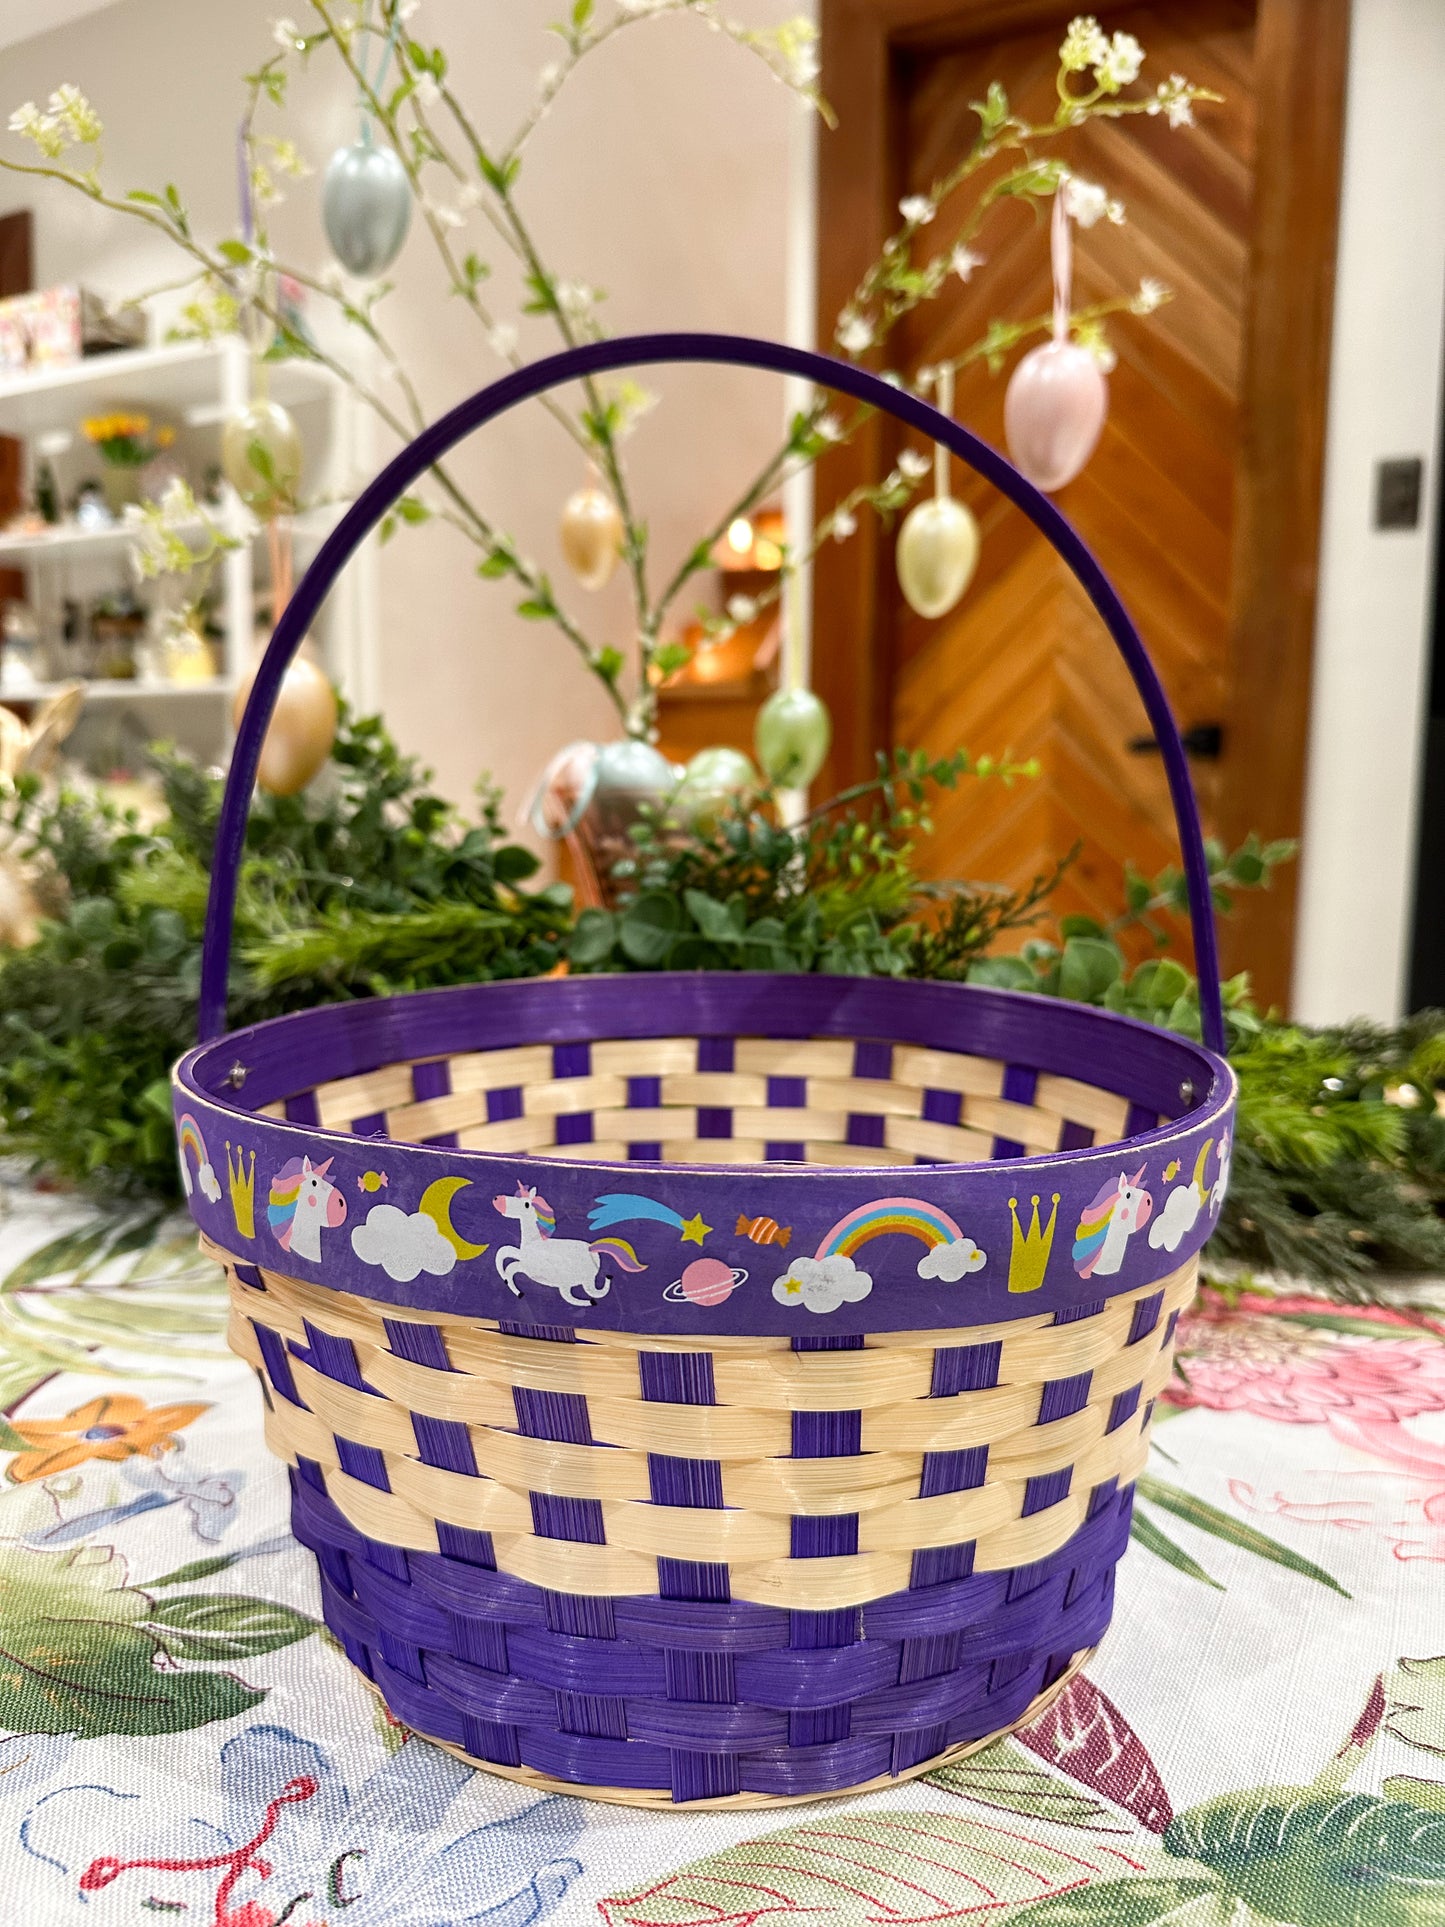 Egg Hunting Baskets